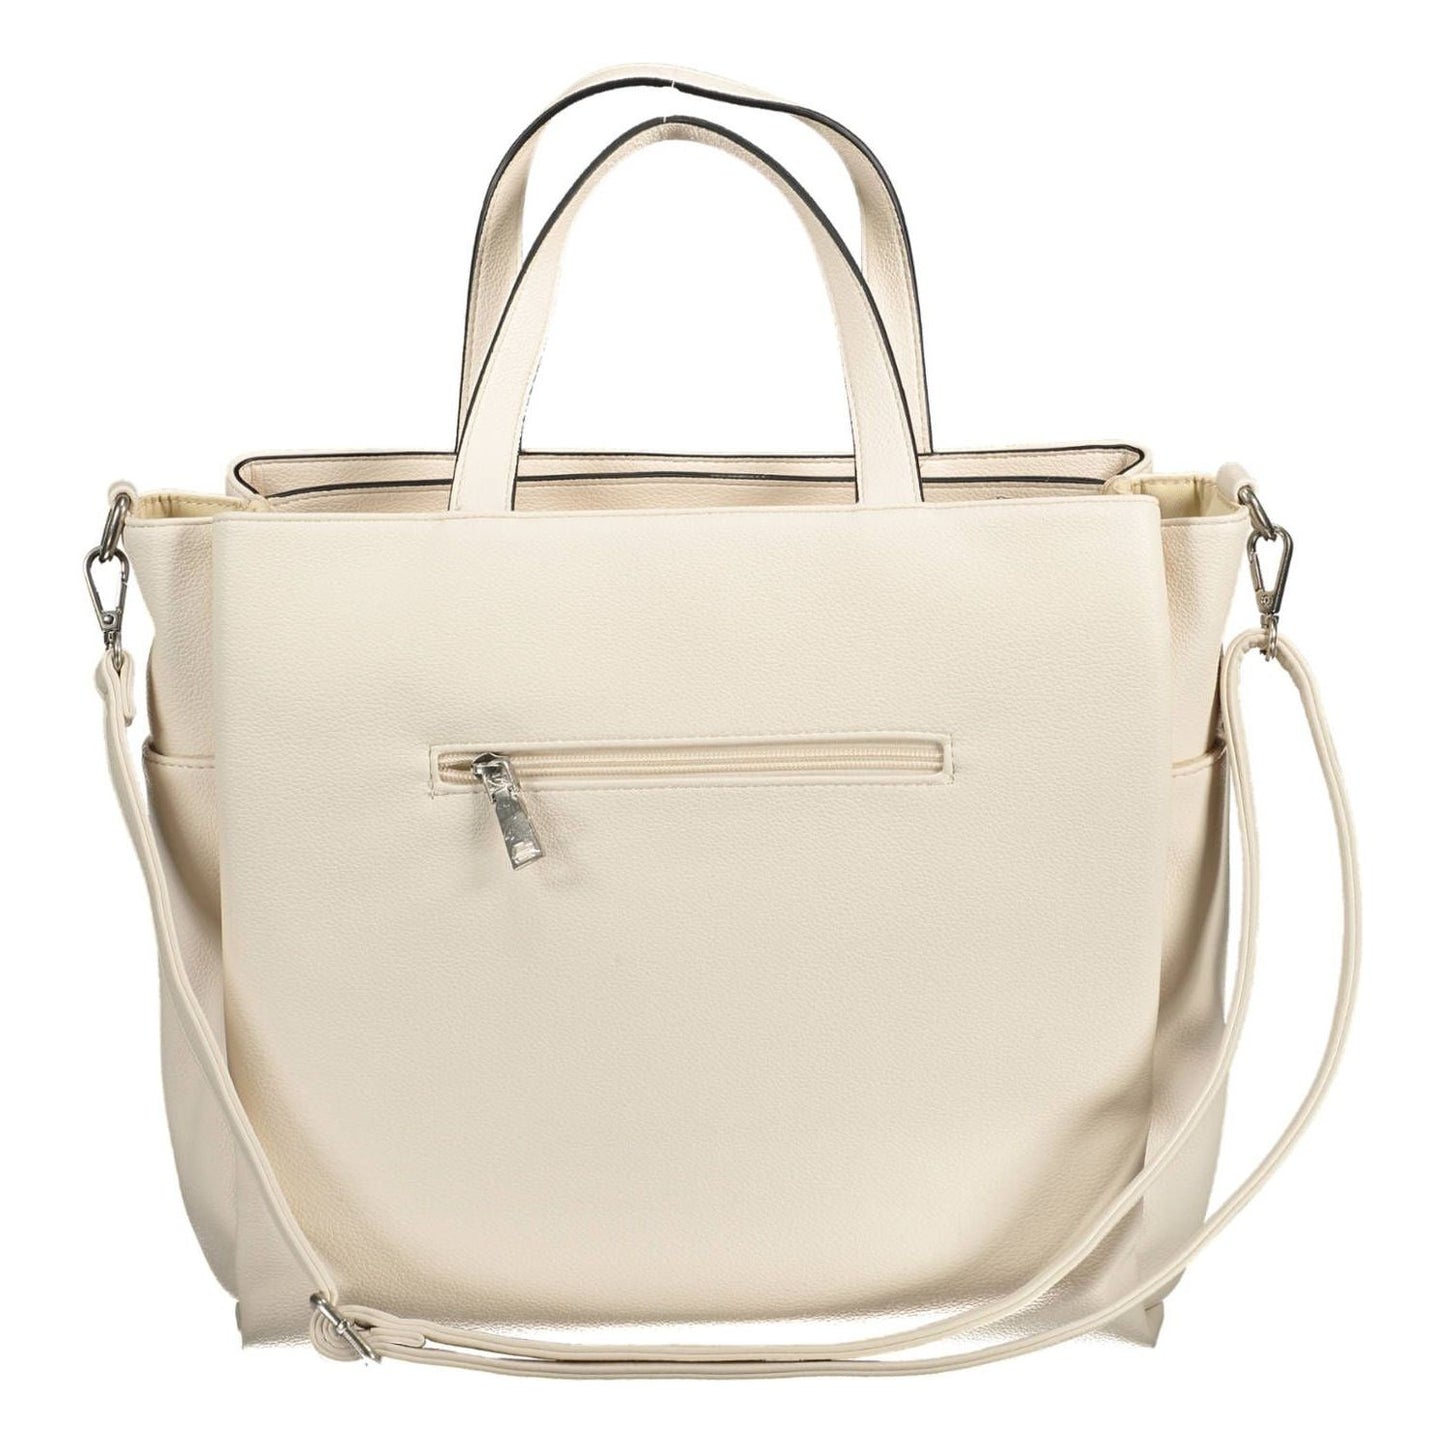 BYBLOS Elegant White Multi-Pocket Handbag elegant-white-multi-pocket-handbag